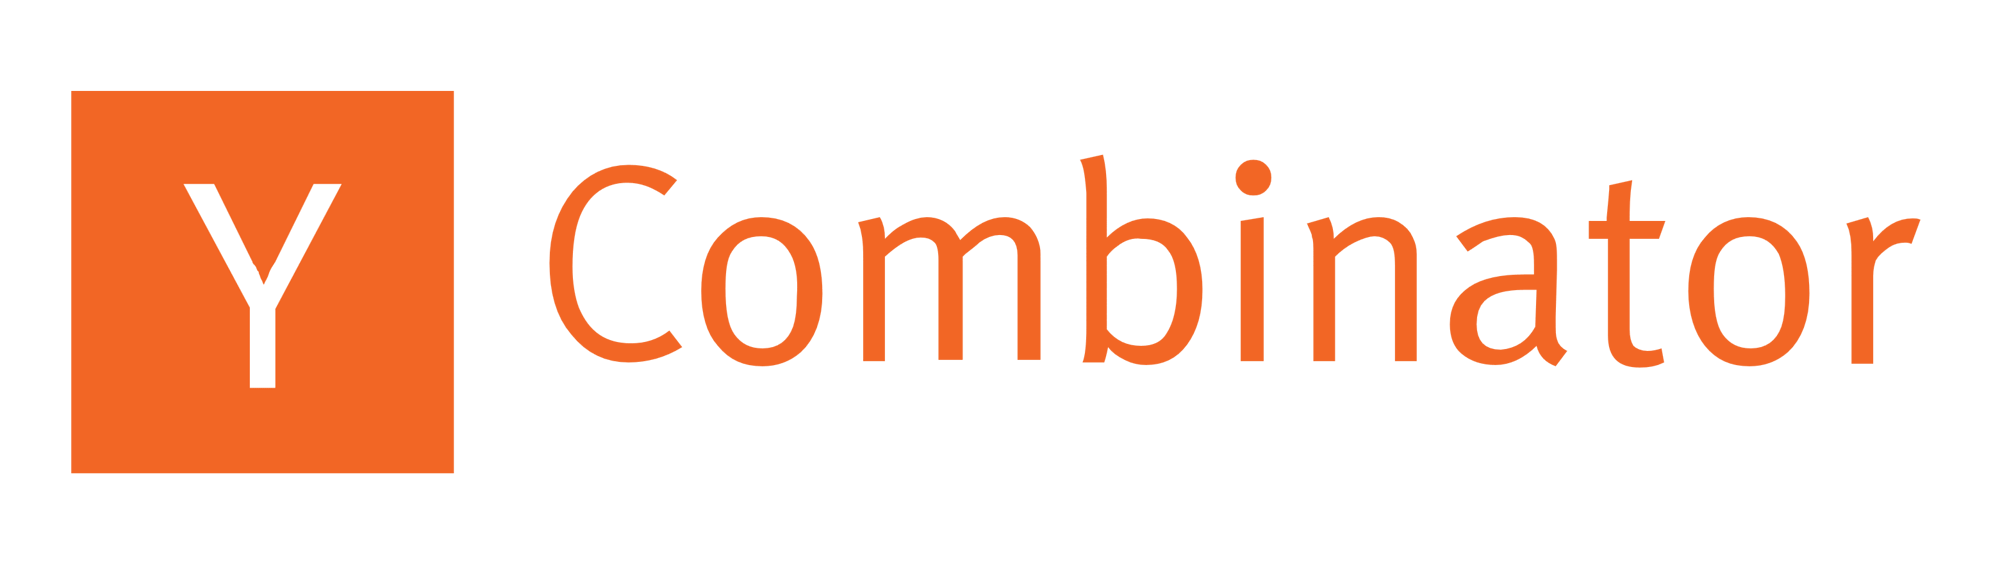 Y_Combinator_logo_text_wordmark